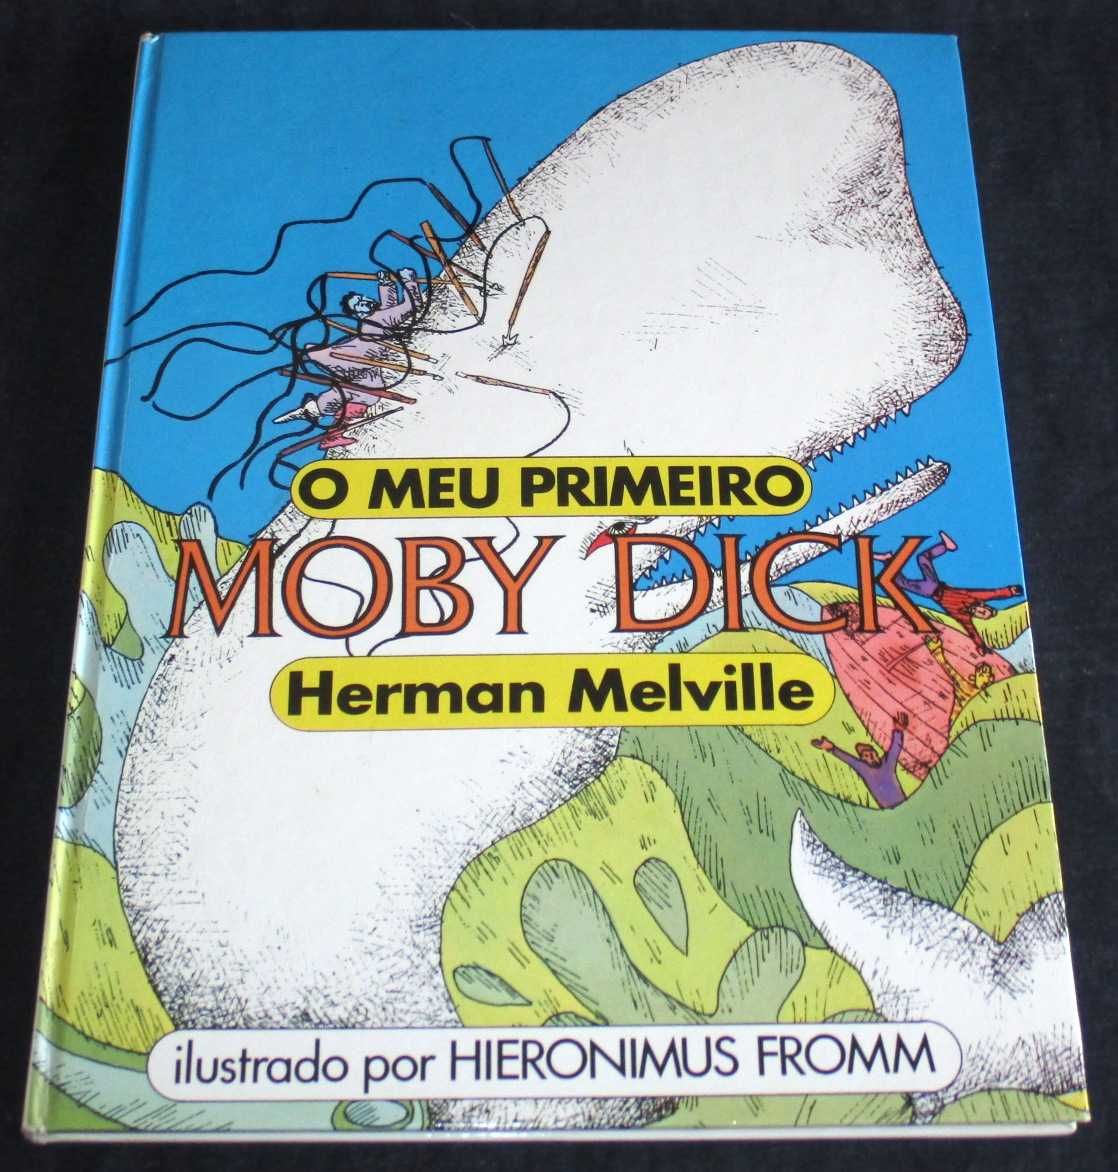 Livro O Meu Primeiro Moby Dick Herman Melville ilustrado